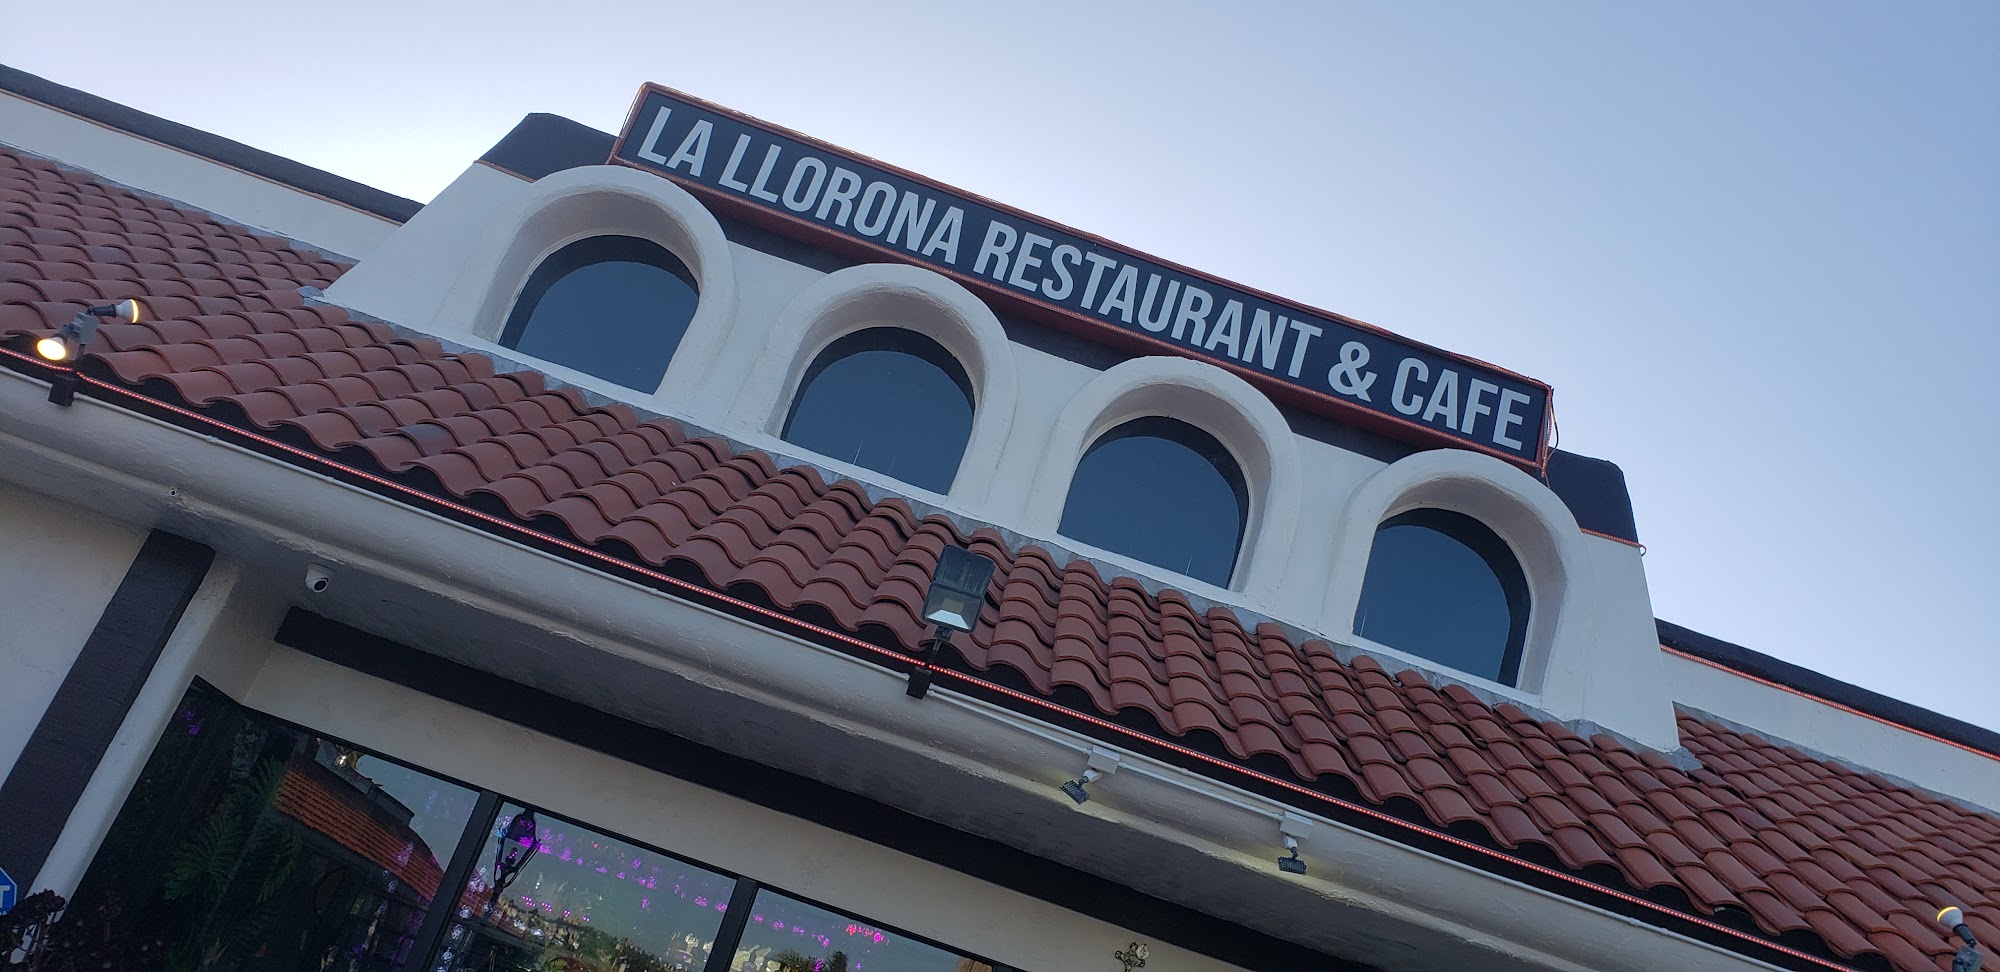 La Llorona Restaurant and Cafe